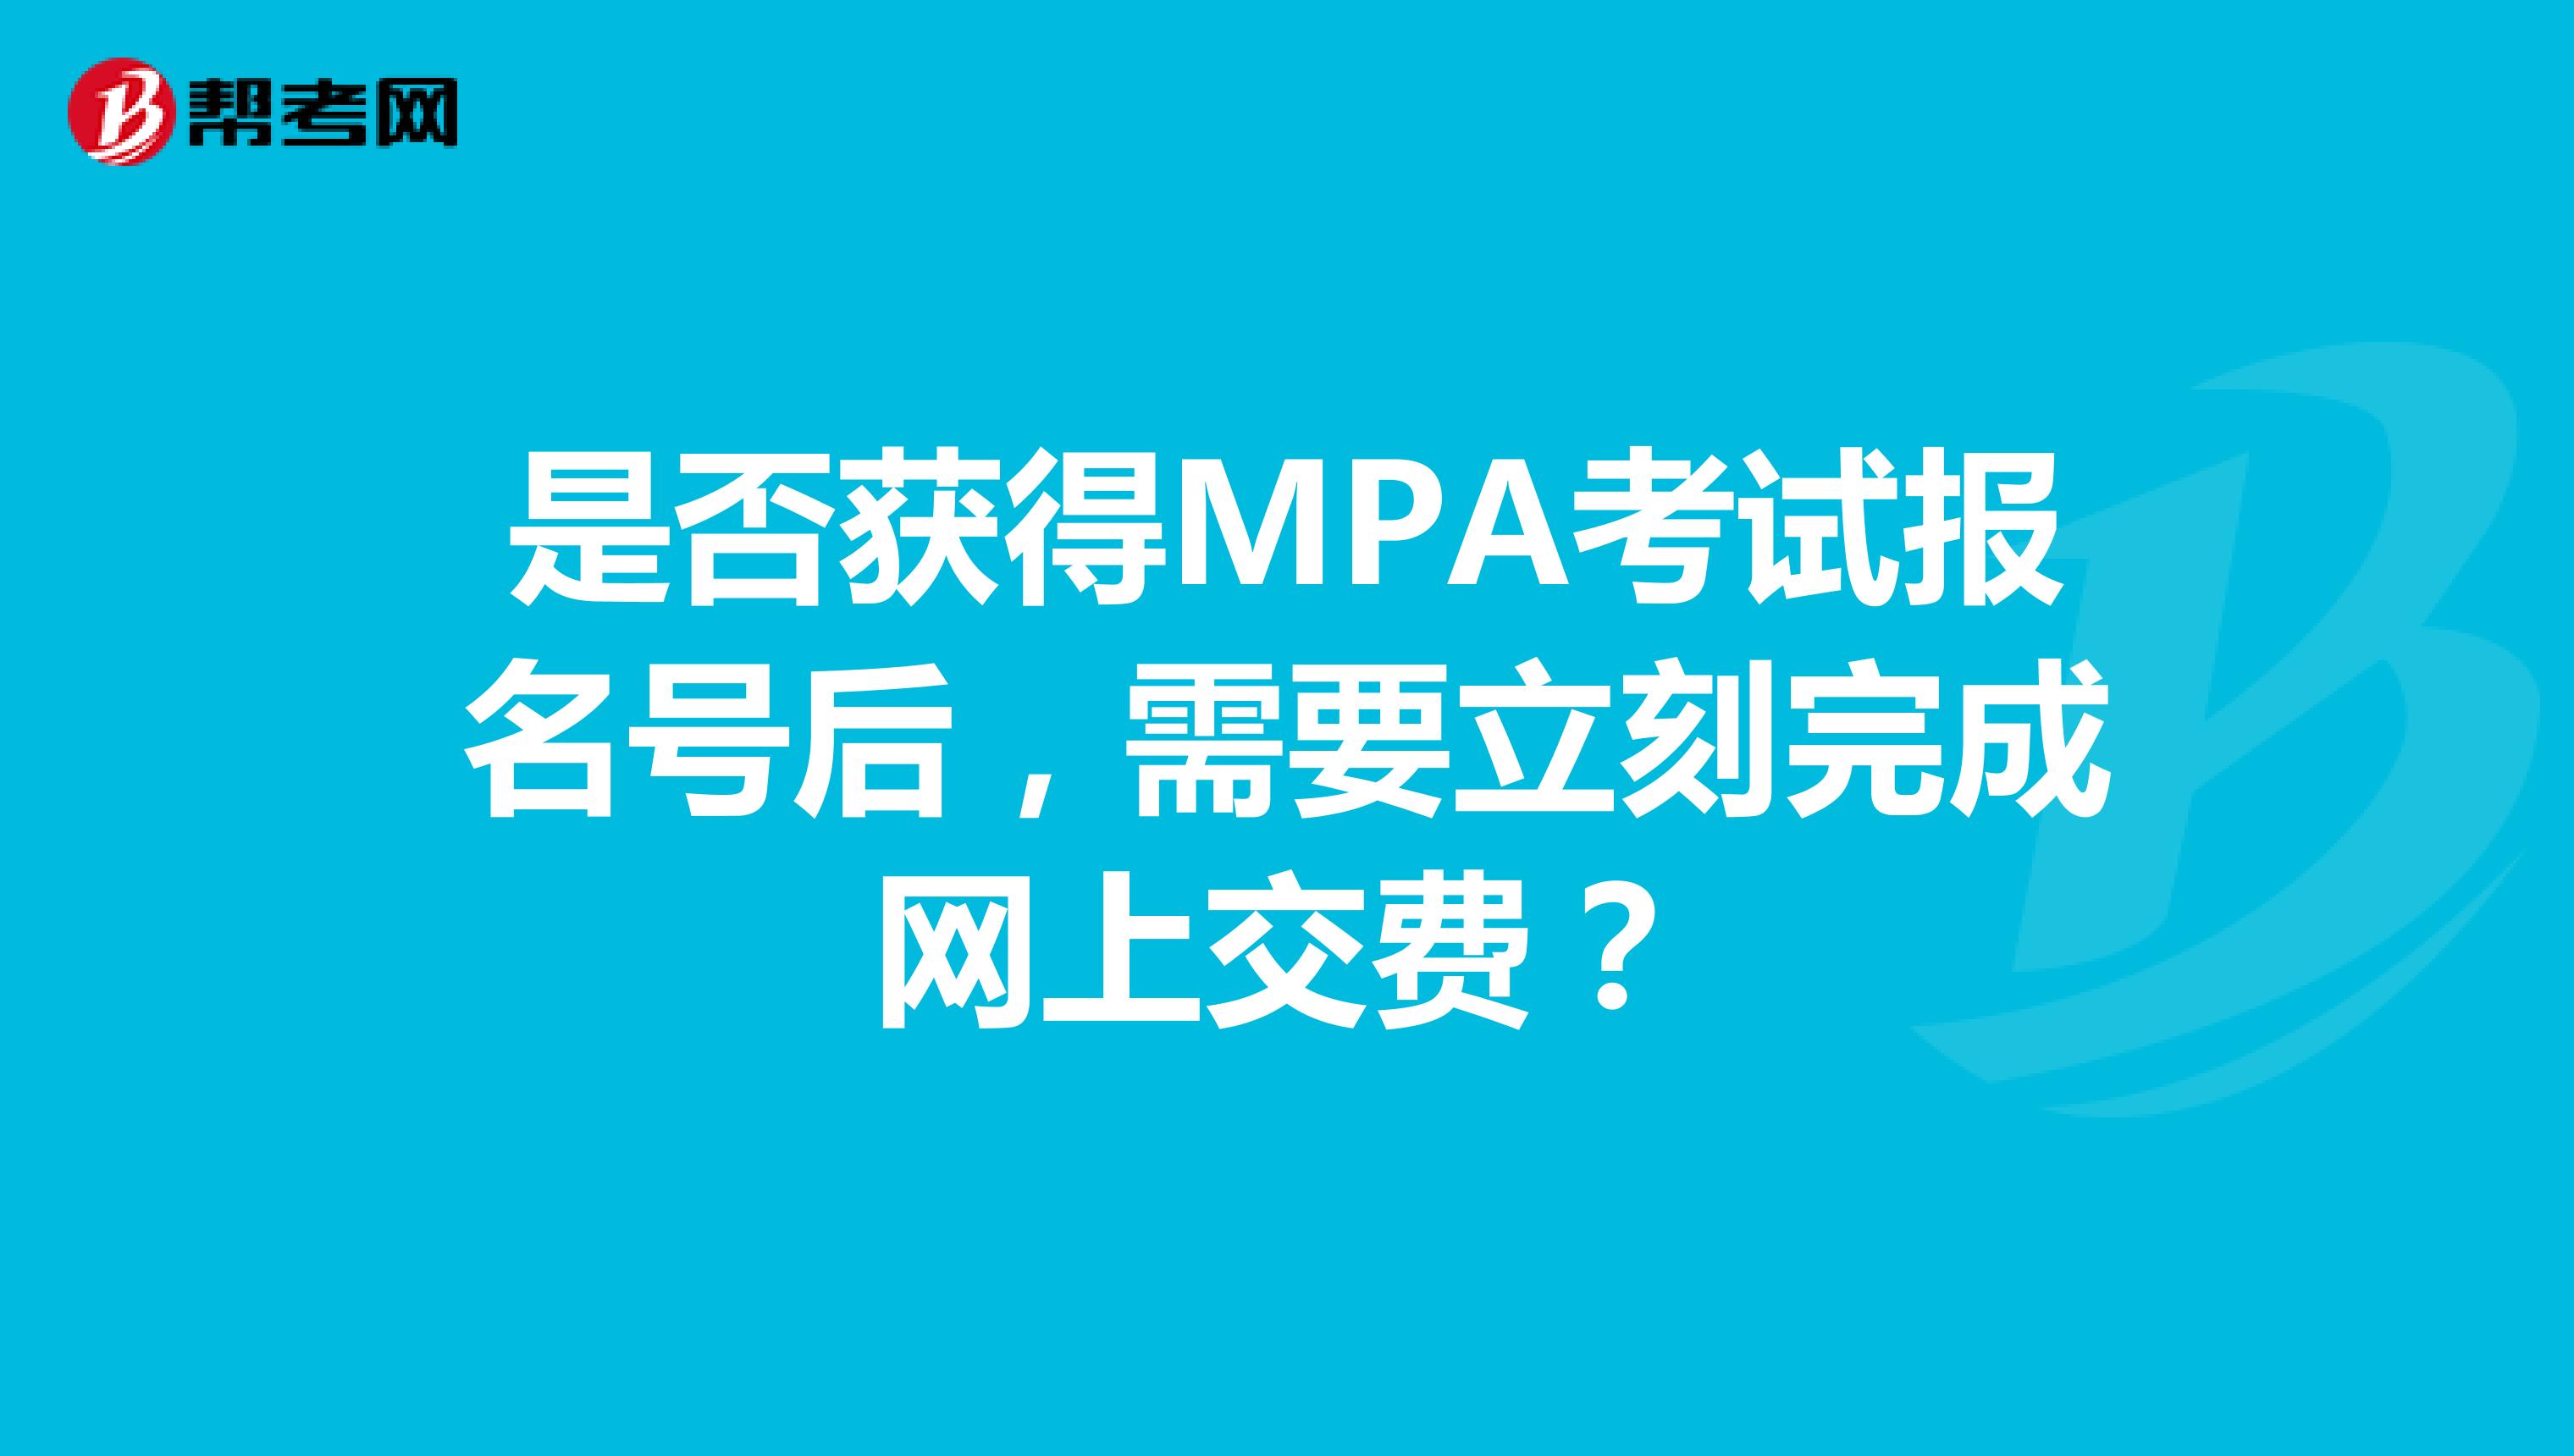 是否获得MPA考试报名号后，需要立刻完成网上交费？